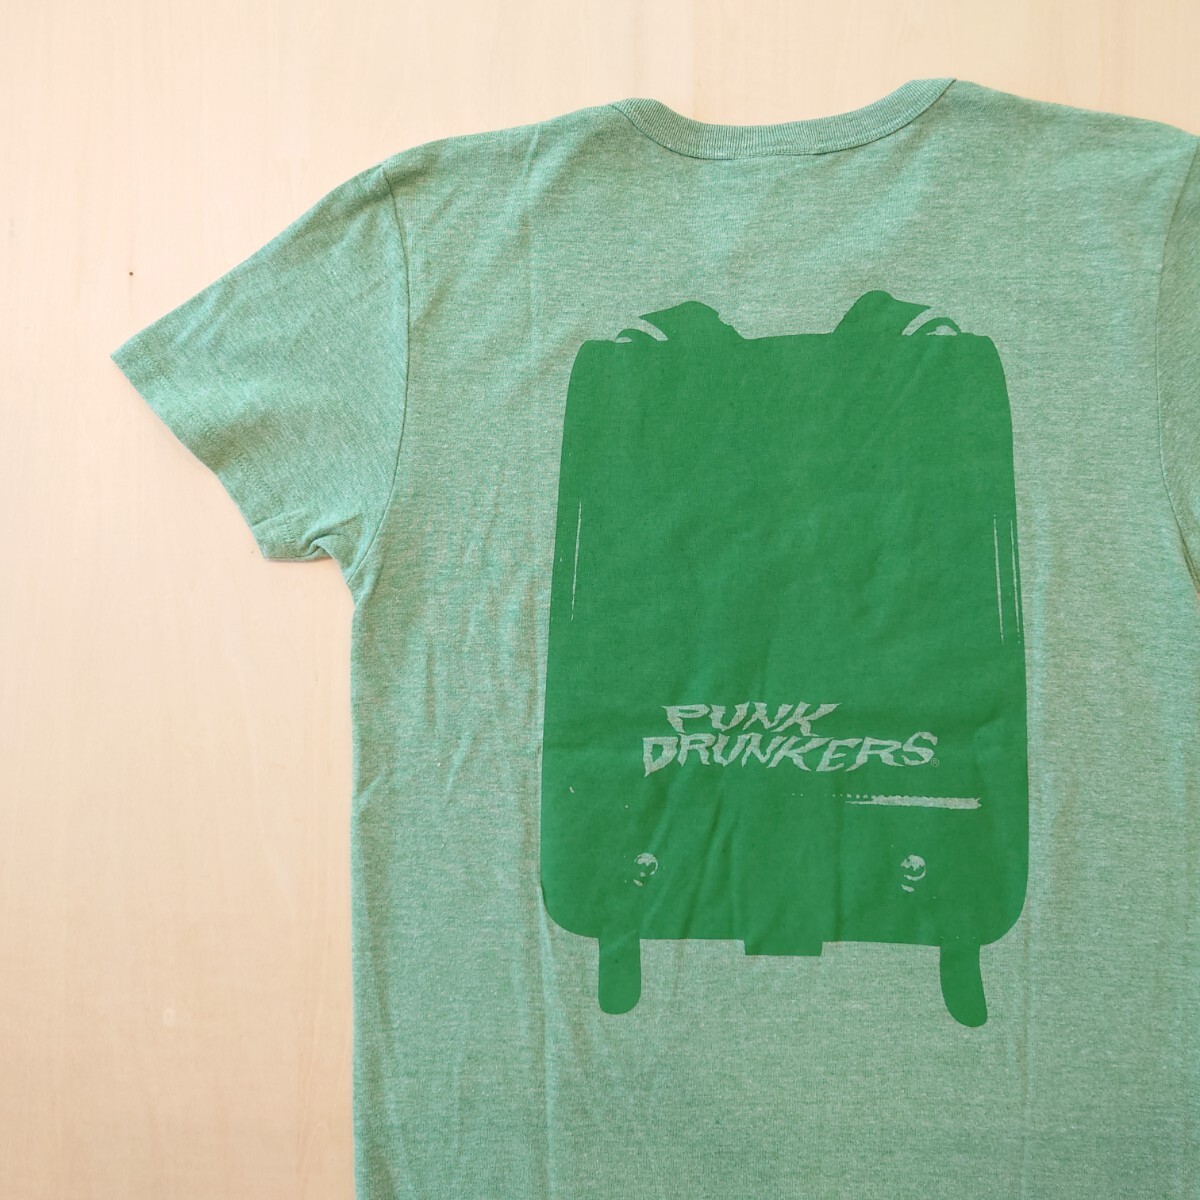 PUNK DRUNKERS Tシャツ 半袖 よくできました 未使用新品 パンクドランカーズ サイズS 2404_画像5